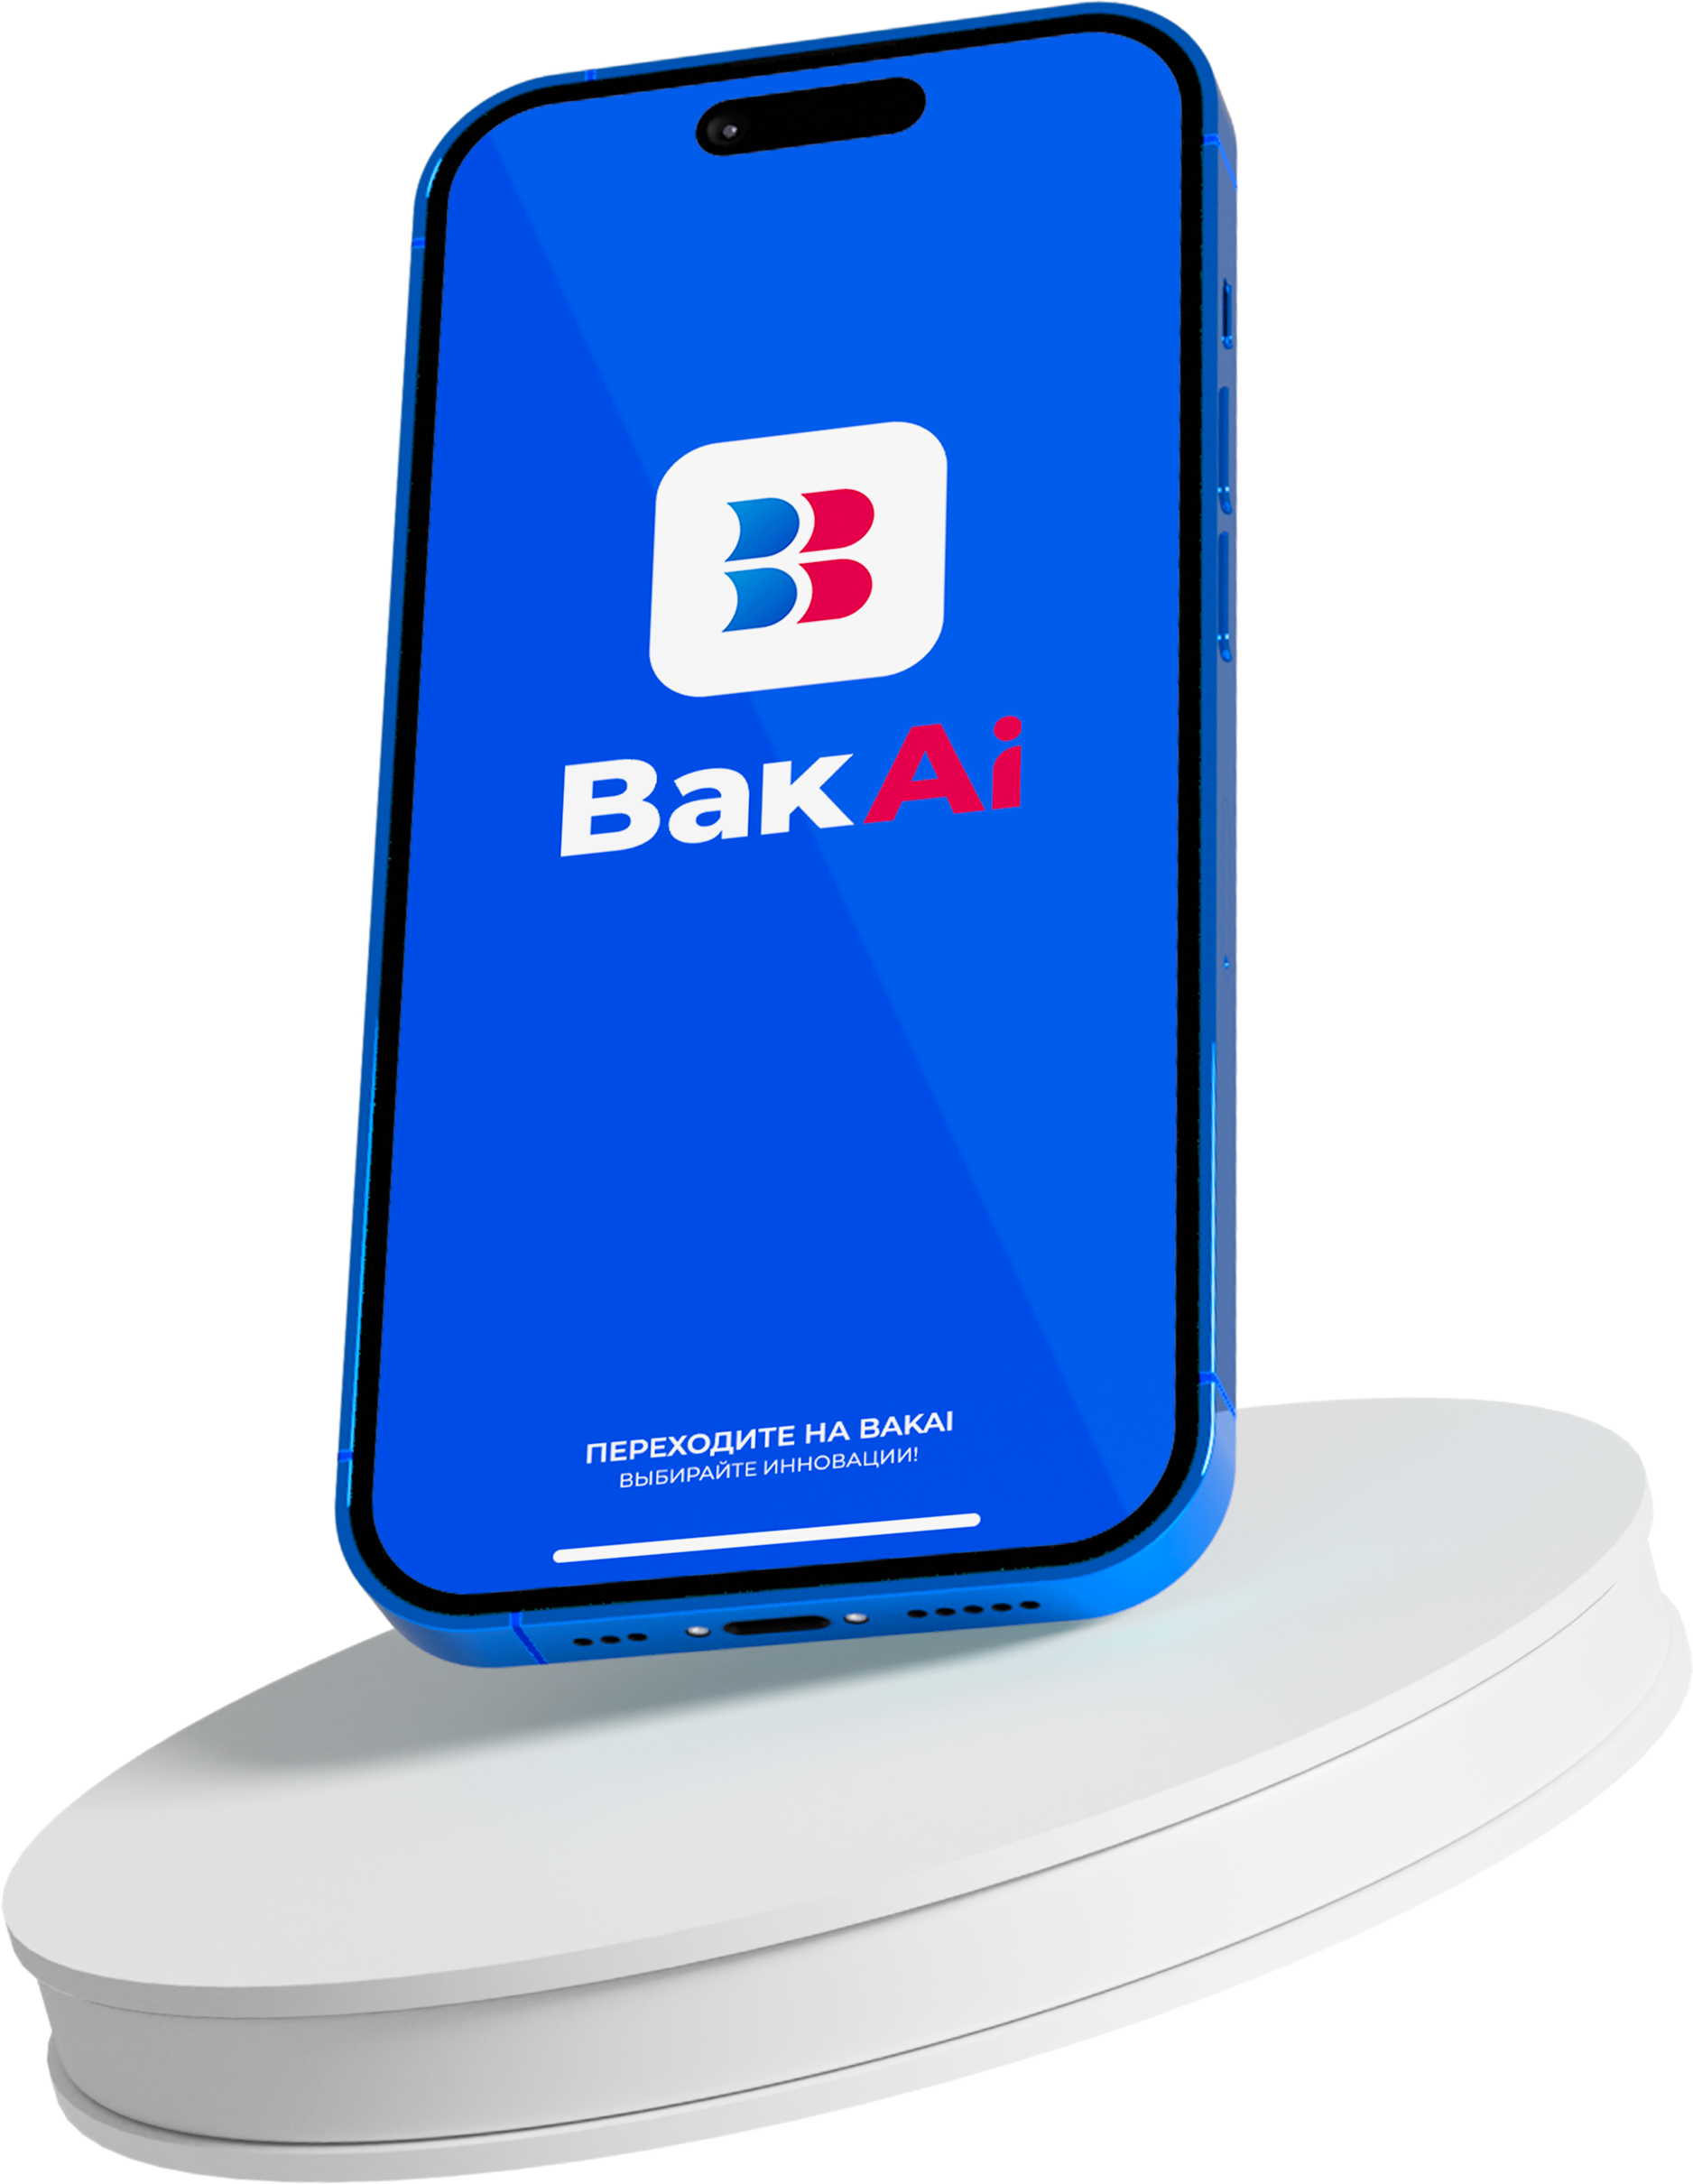 BakAi App